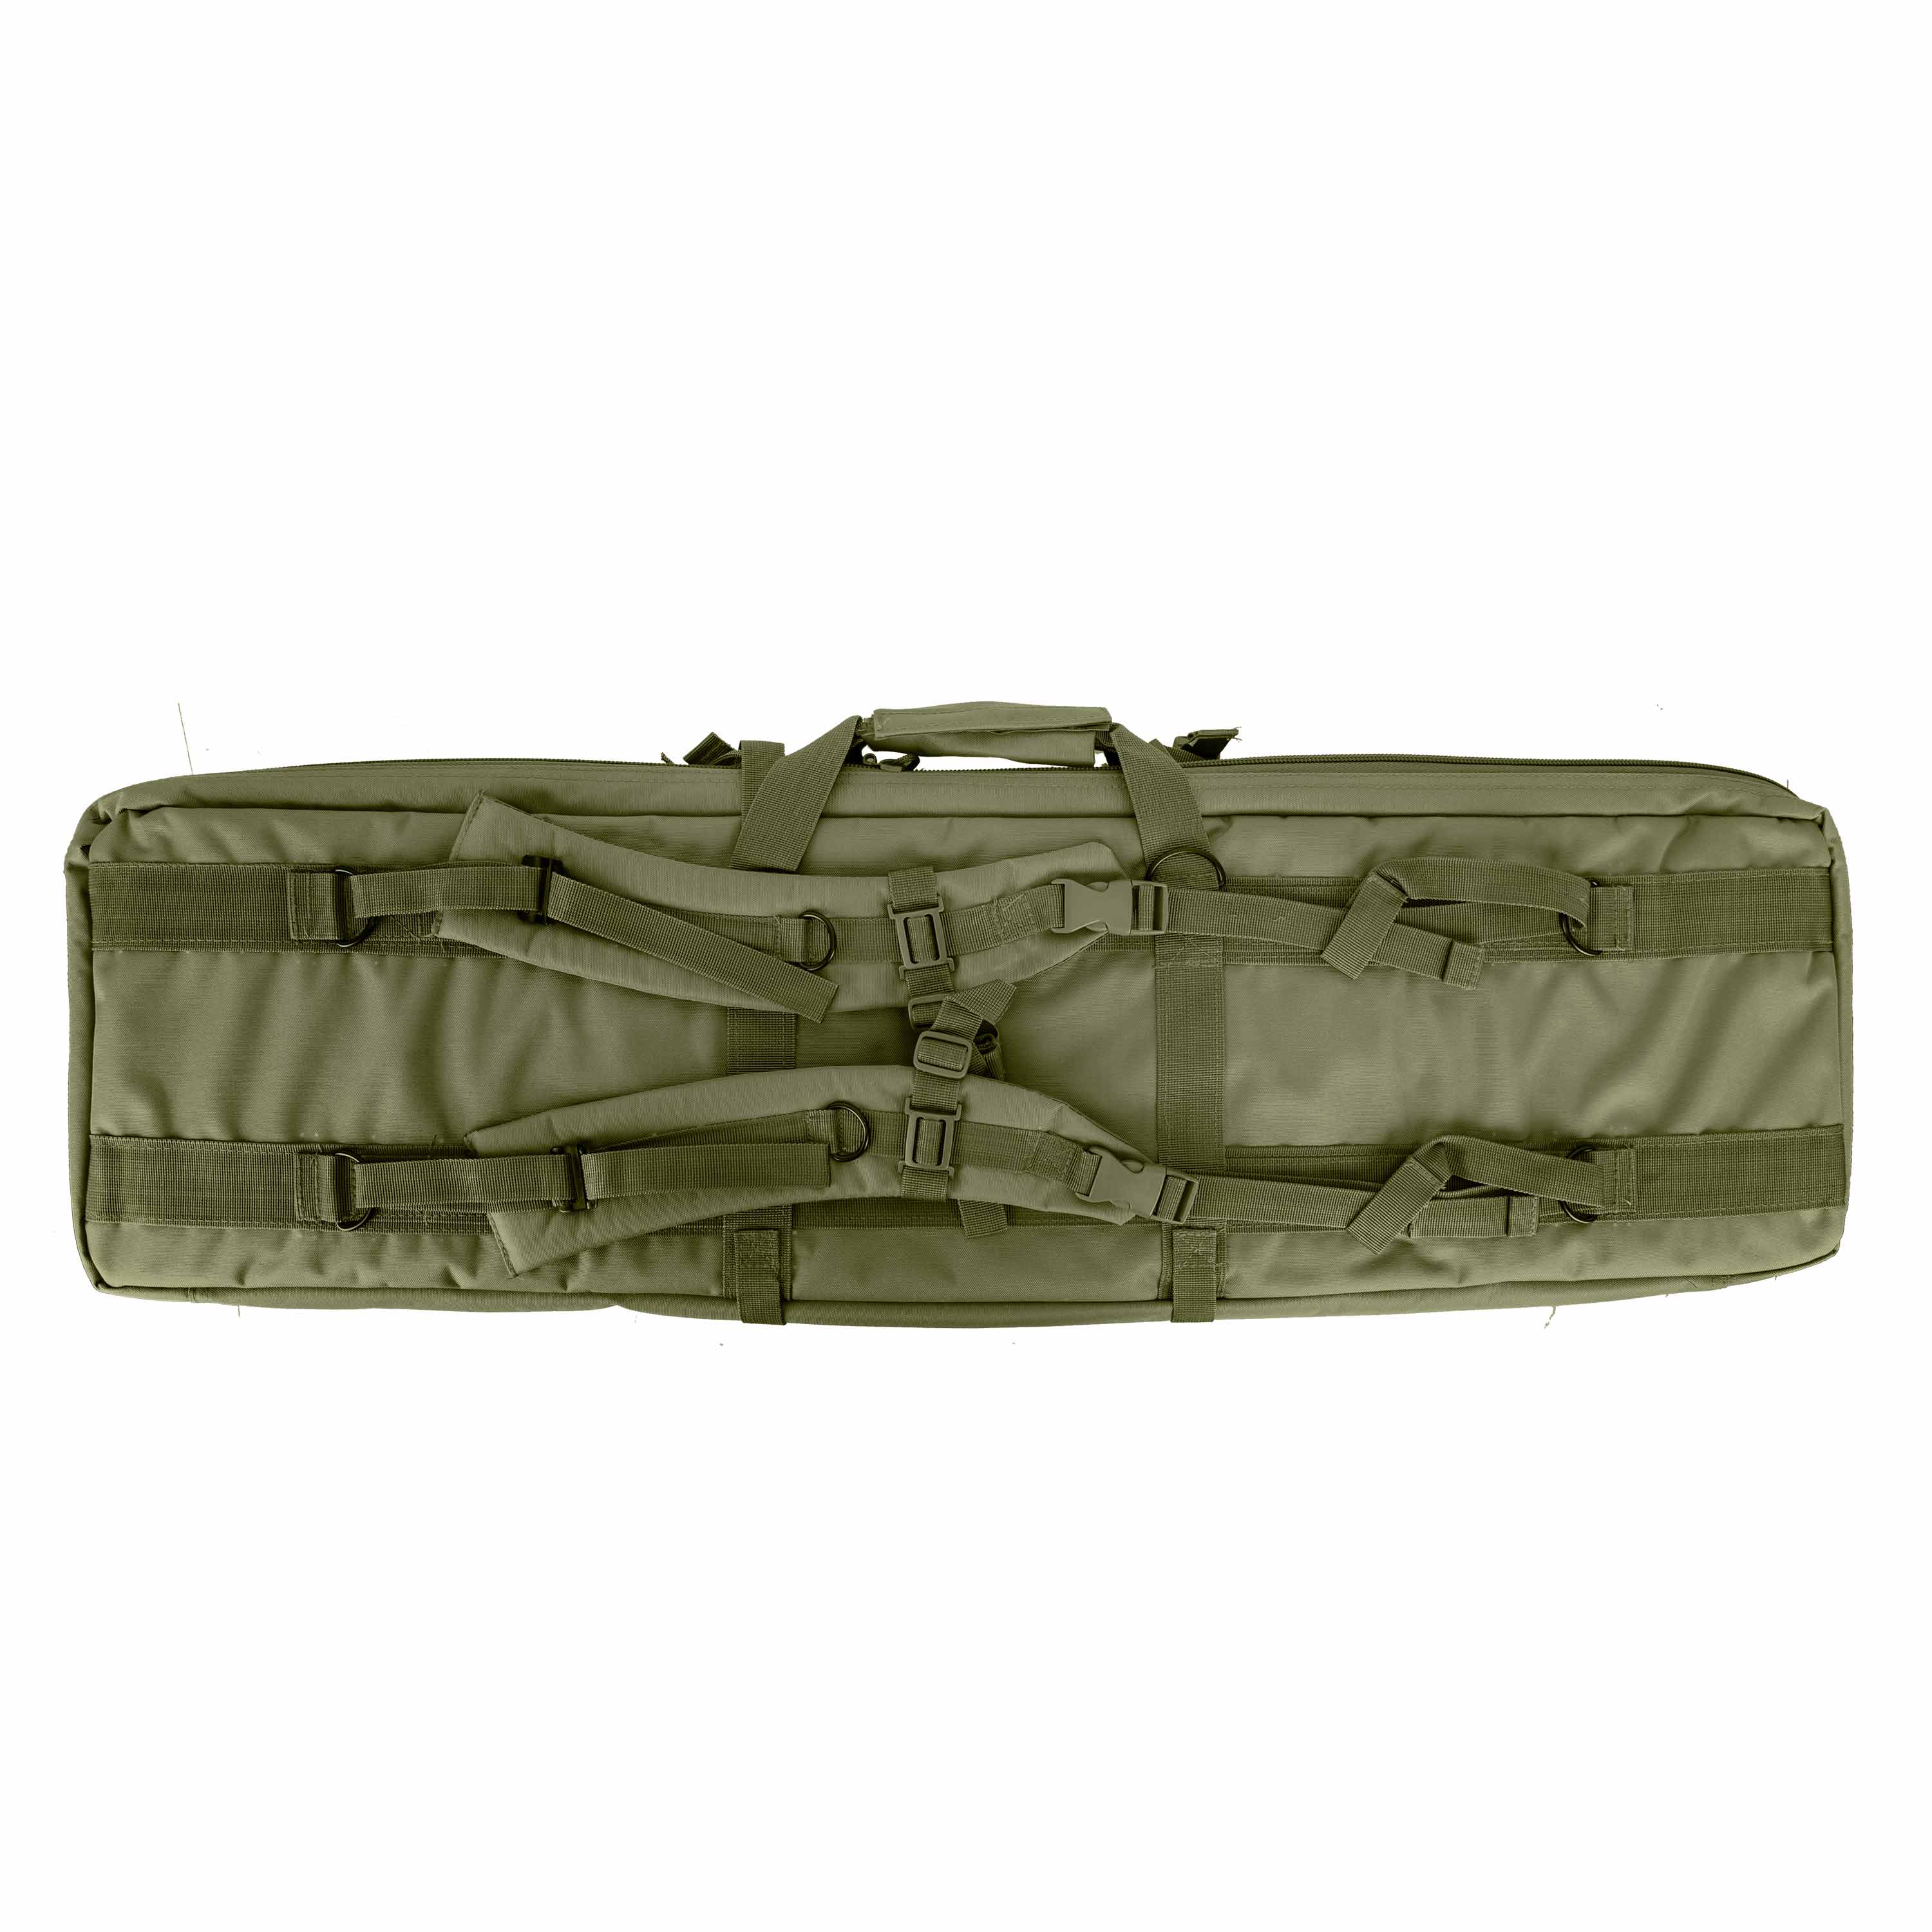 Mil-Tec Rifle Bag olive | Mil-Tec Rifle Bag olive | Cases | Accessories ...